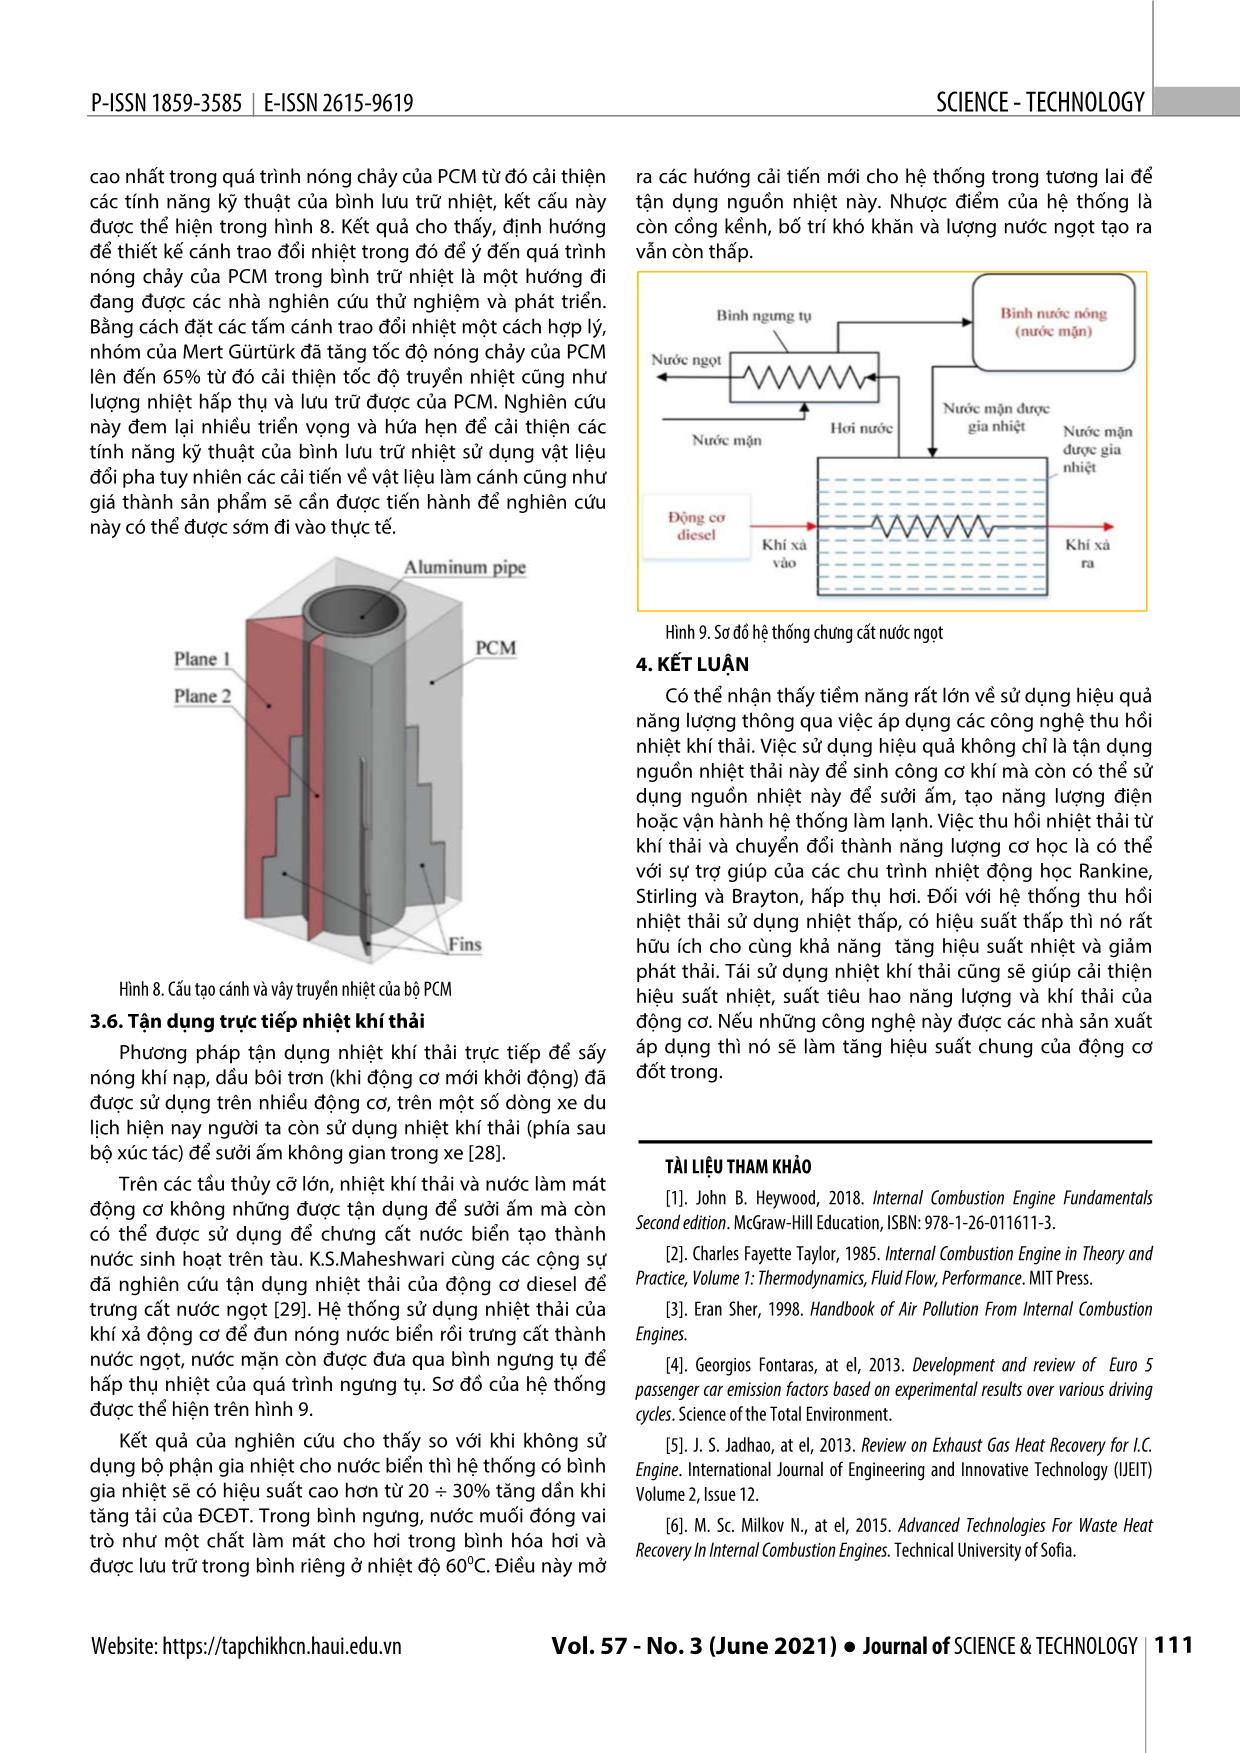 Các phương pháp tận dụng năng lượng nhiệt khí thải trong động cơ đốt trong trang 5